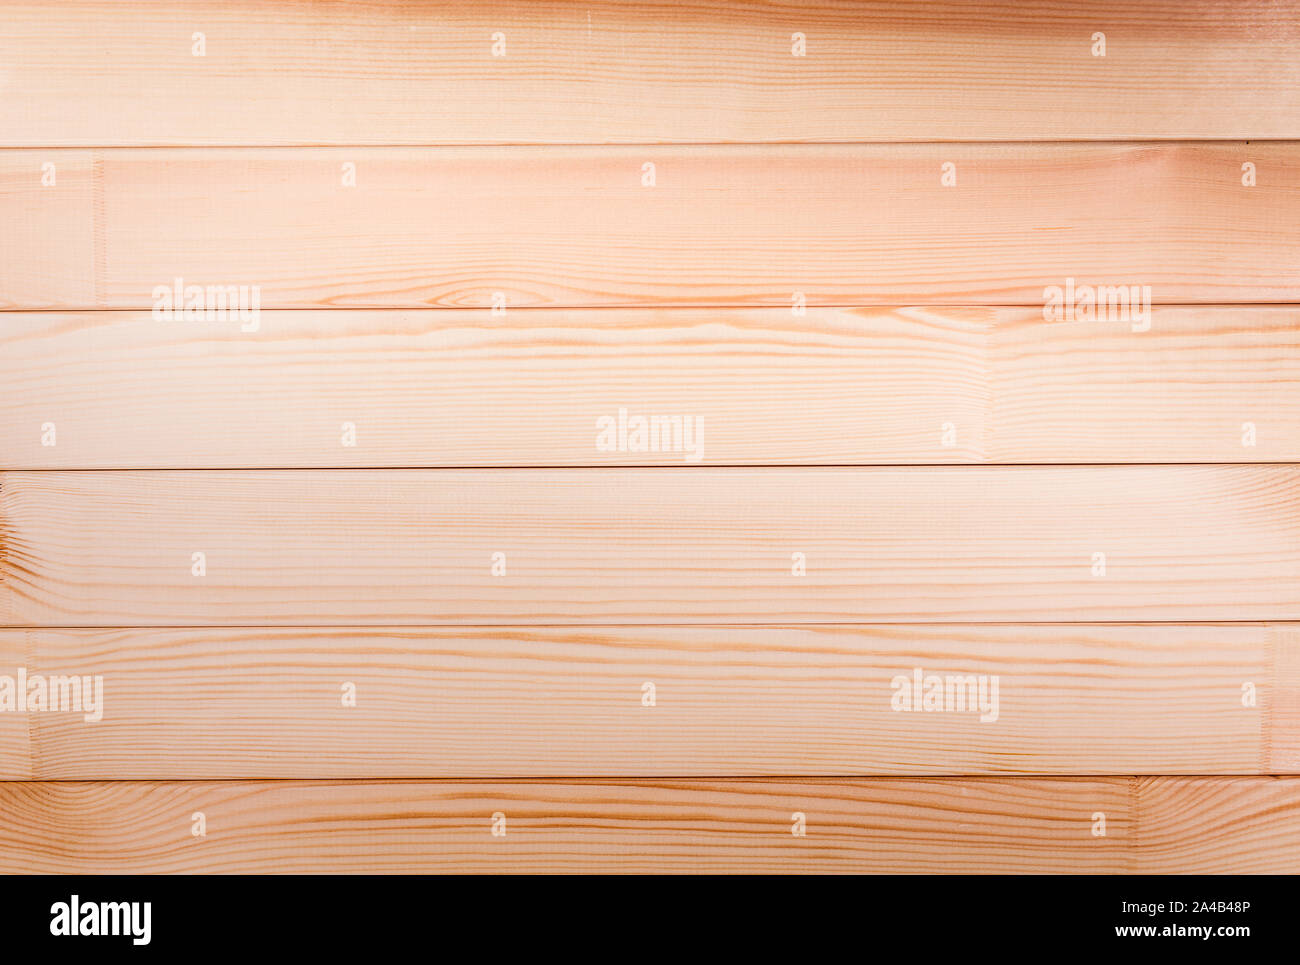 Với độ thô và vân texture tự nhiên, bề mặt gỗ thông này sẽ mang lại cho không gian của bạn một vẻ đẹp hoang dã và gần gũi với thiên nhiên. Hãy xem ngay hình ảnh liên quan để cảm nhận được sức hút của pine wood plank texture này.